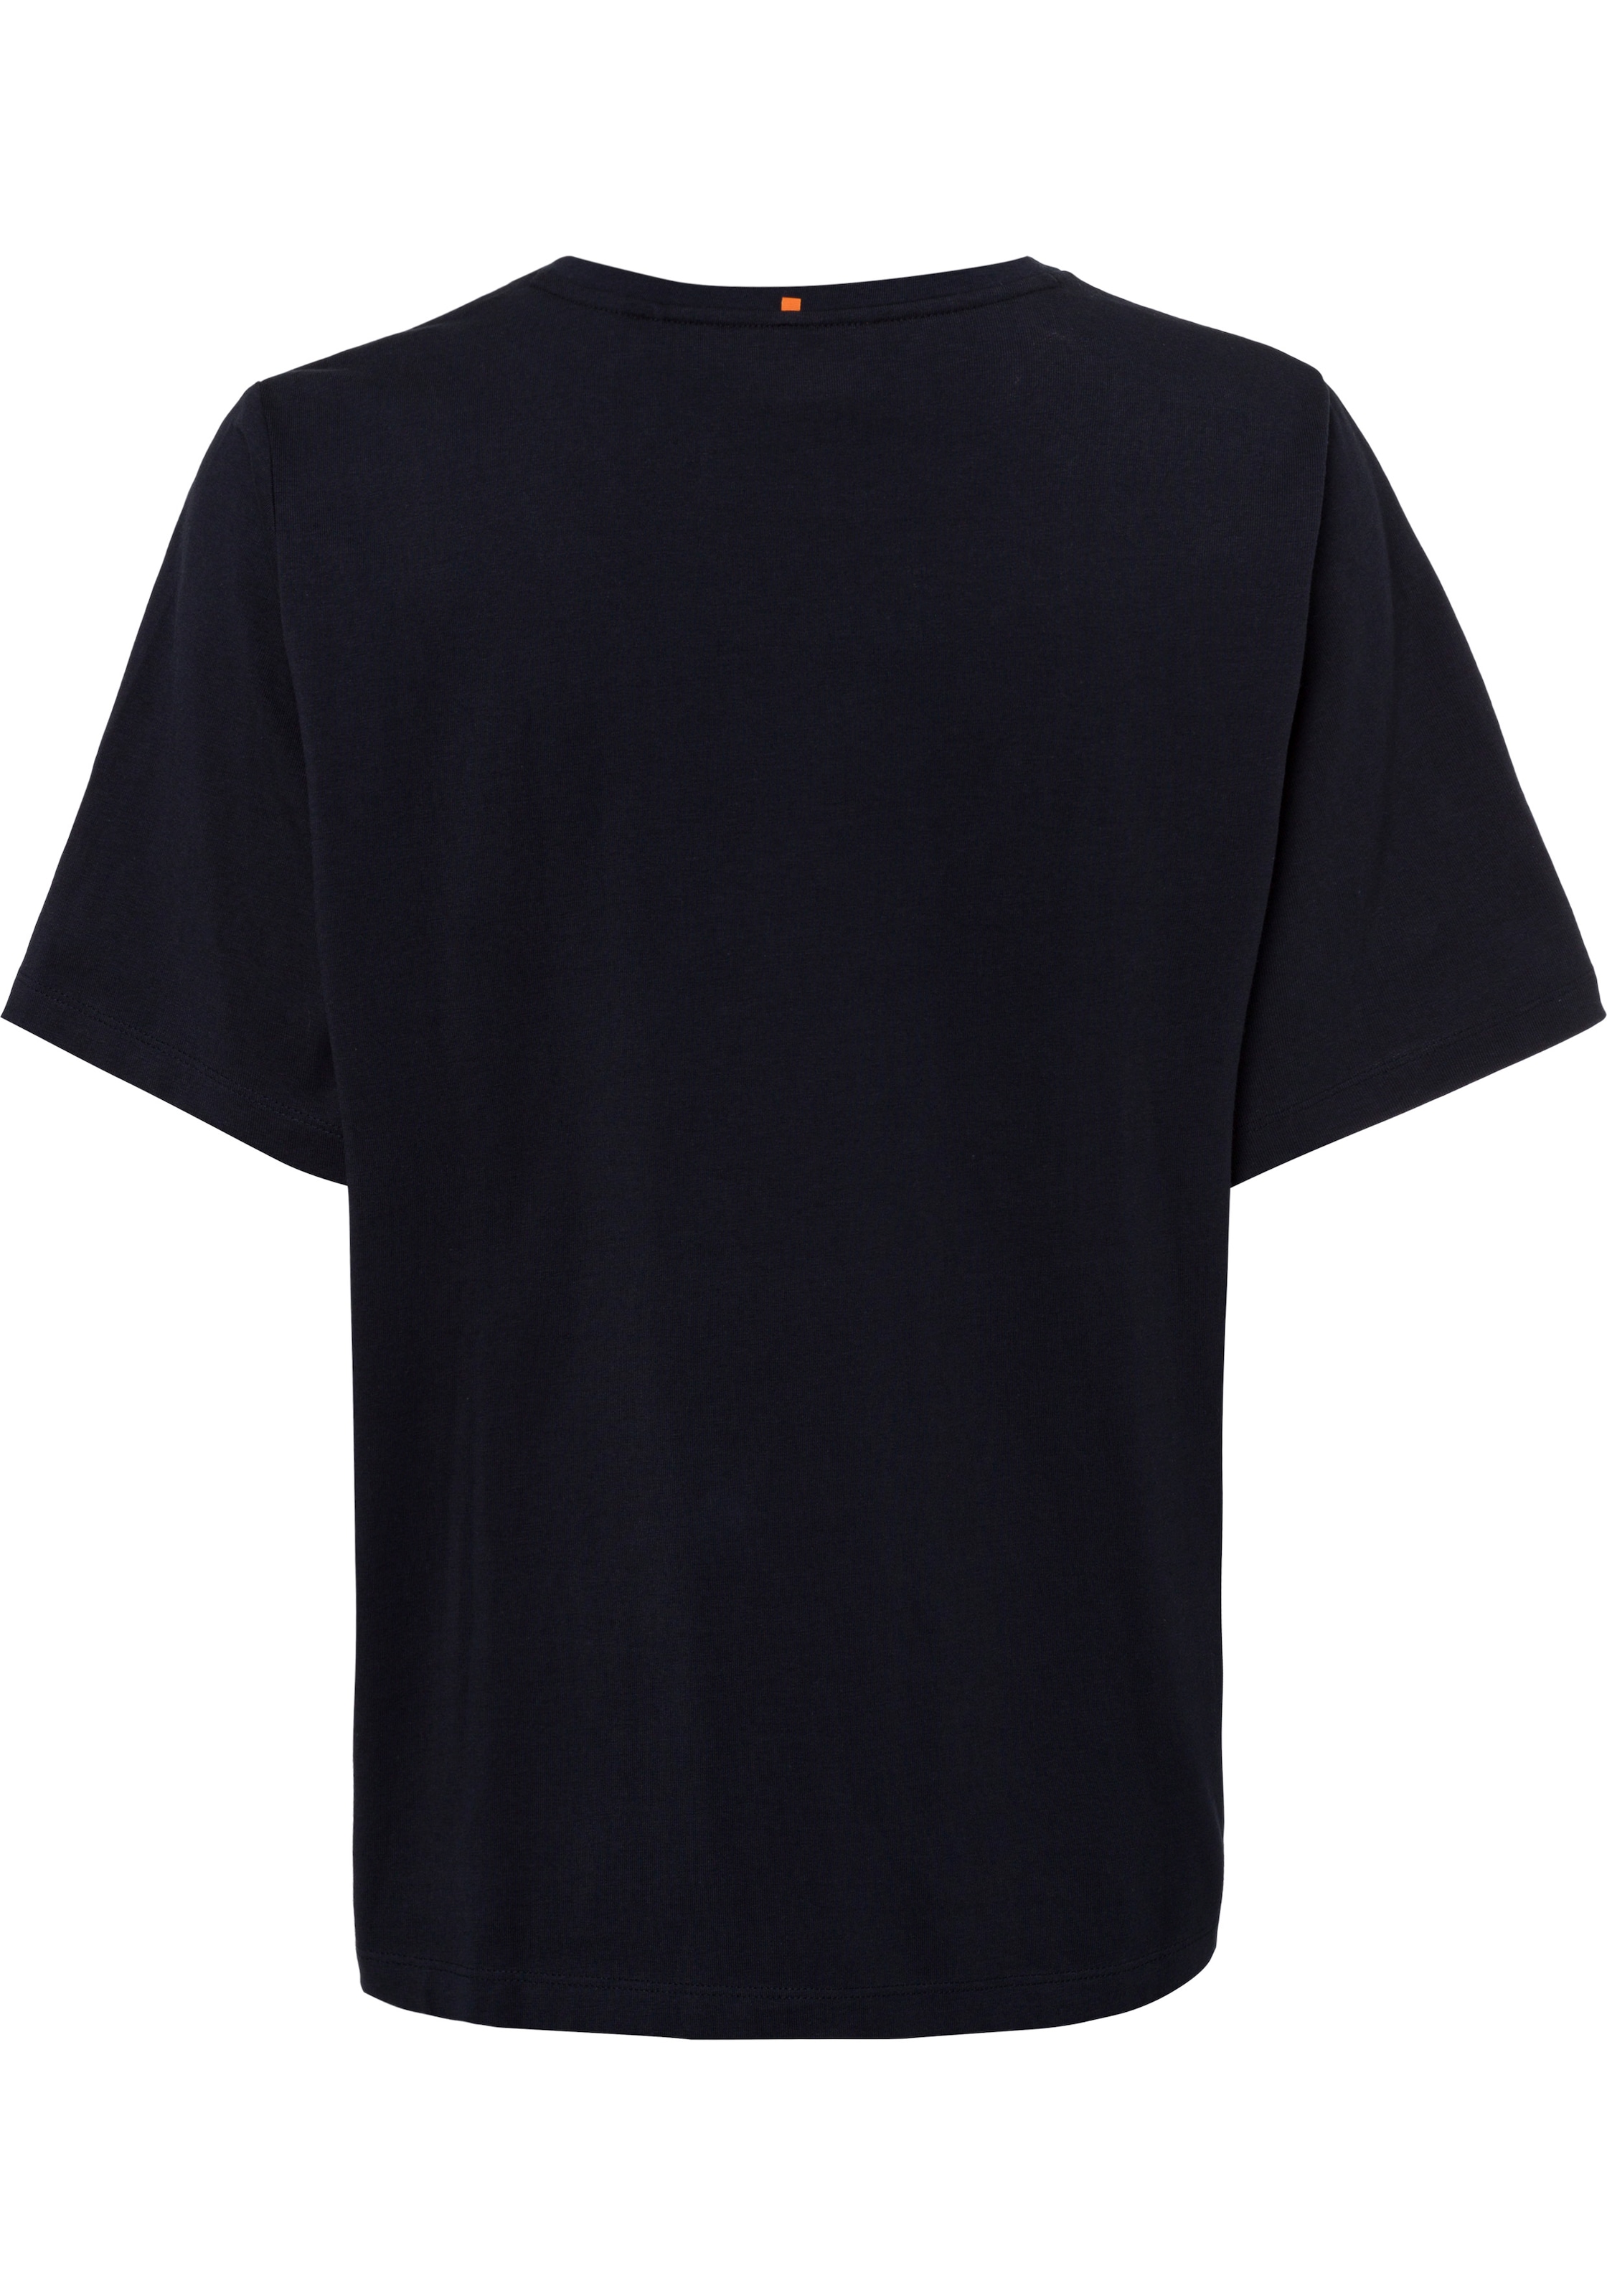 BOSS ORANGE T-Shirt, mit BOSS-Kontrastband innen am Ausschnitt bei ♕